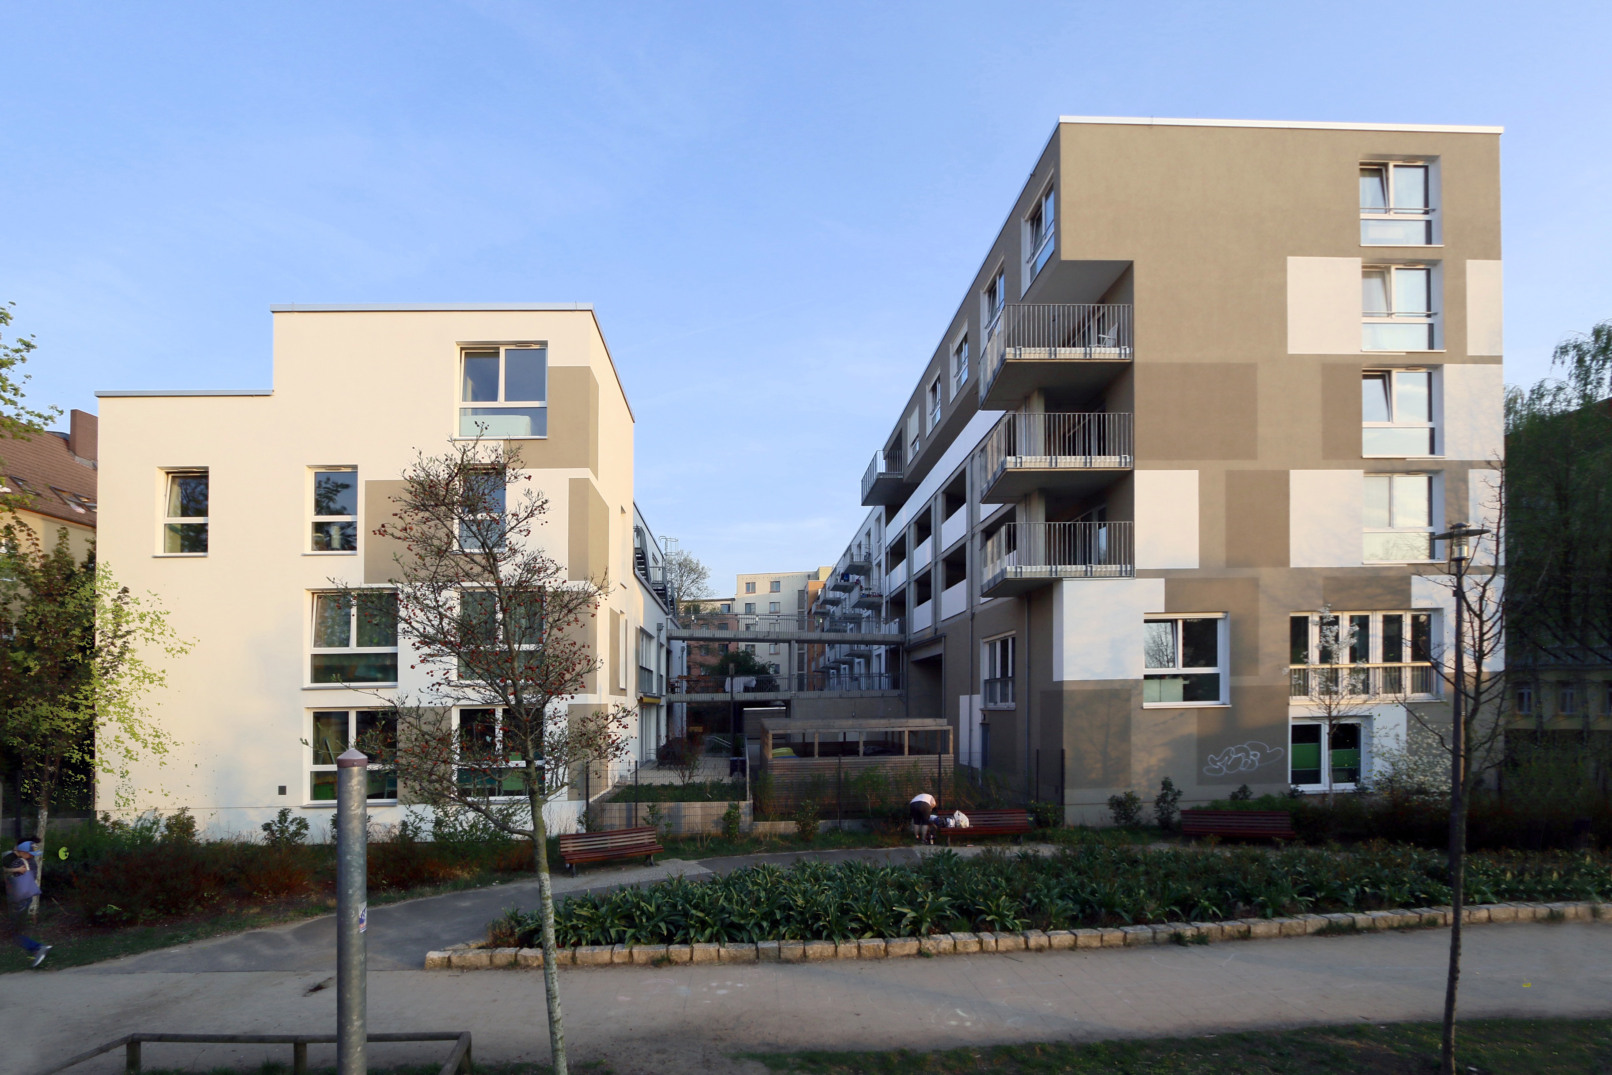 Fassadengestaltung, 2017, Wohnbebauung Wattstraße 2 - 4